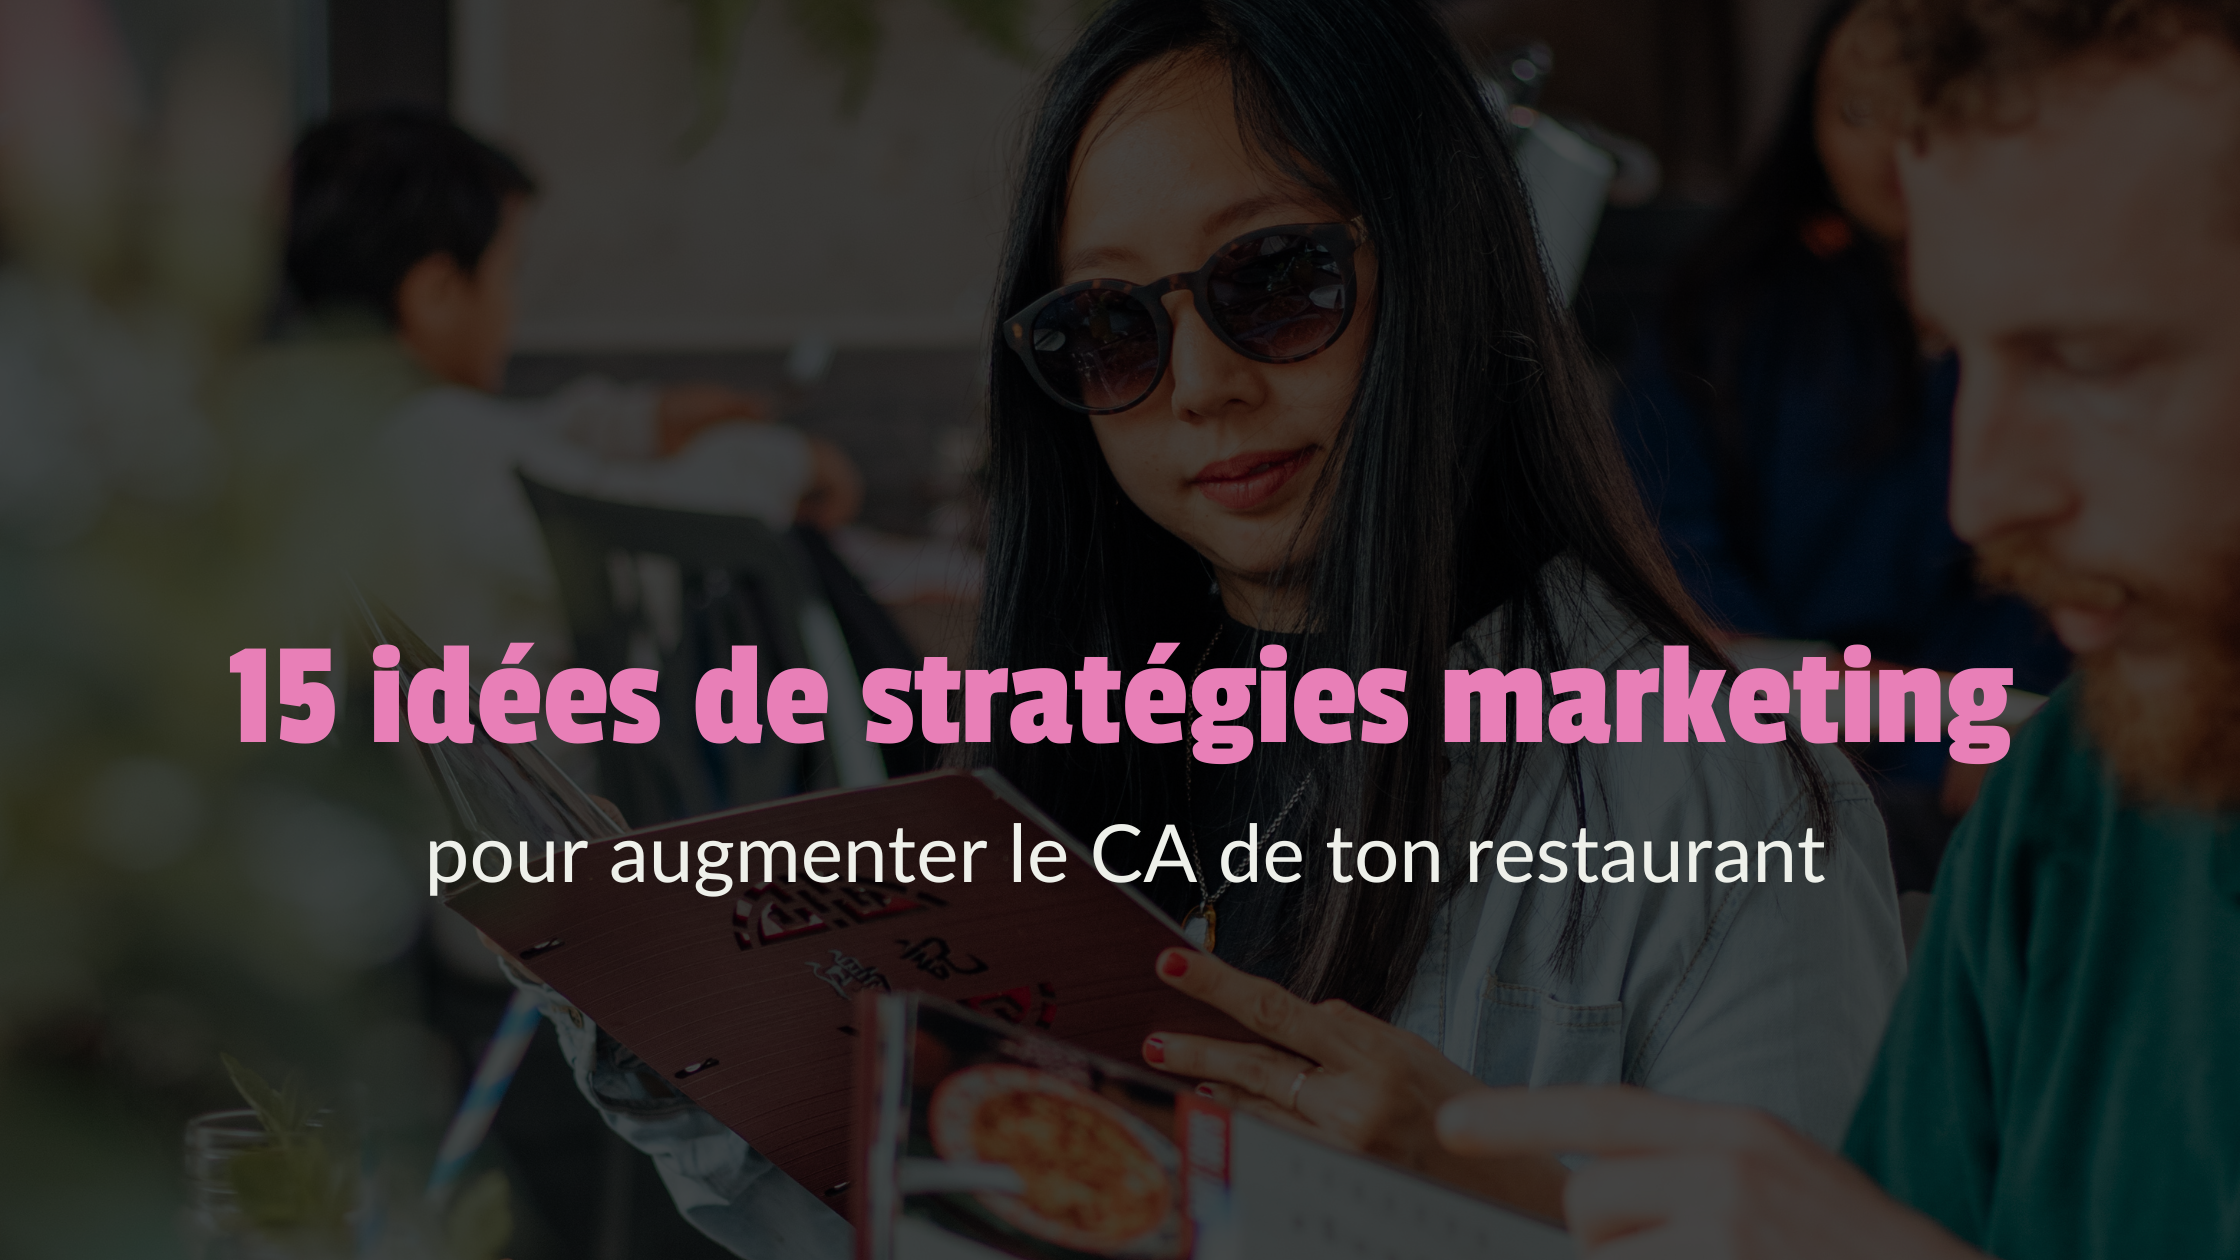 15 idées de stratégies marketing pour augmenter le CA de ton restaurant